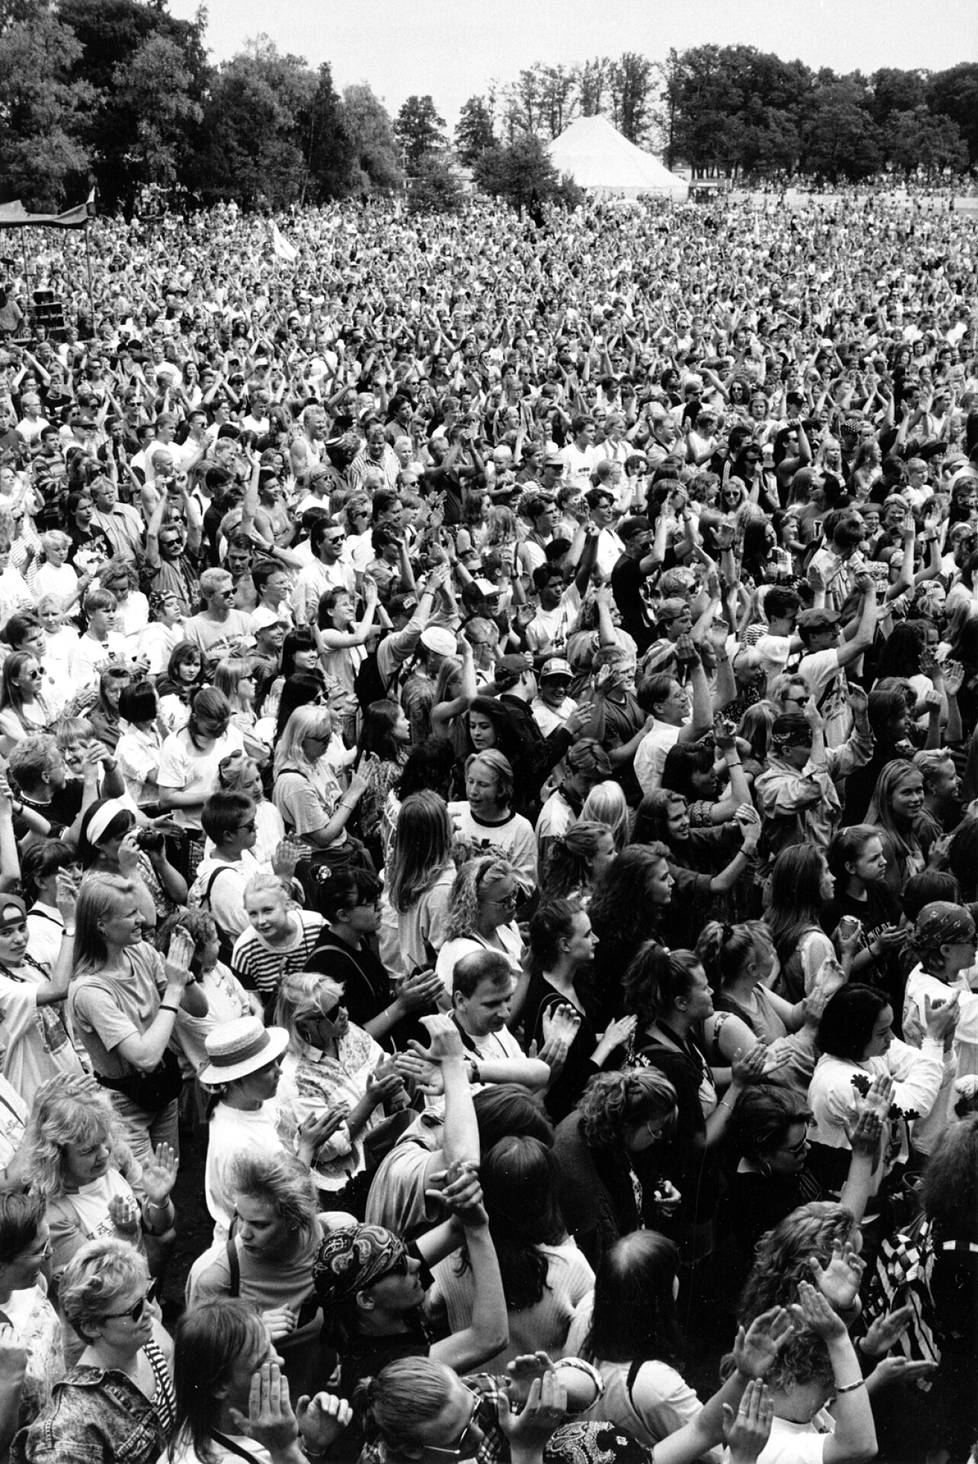 Nirvanaa oli Ruisrockissa katsomassa 25?000 ihmistä.